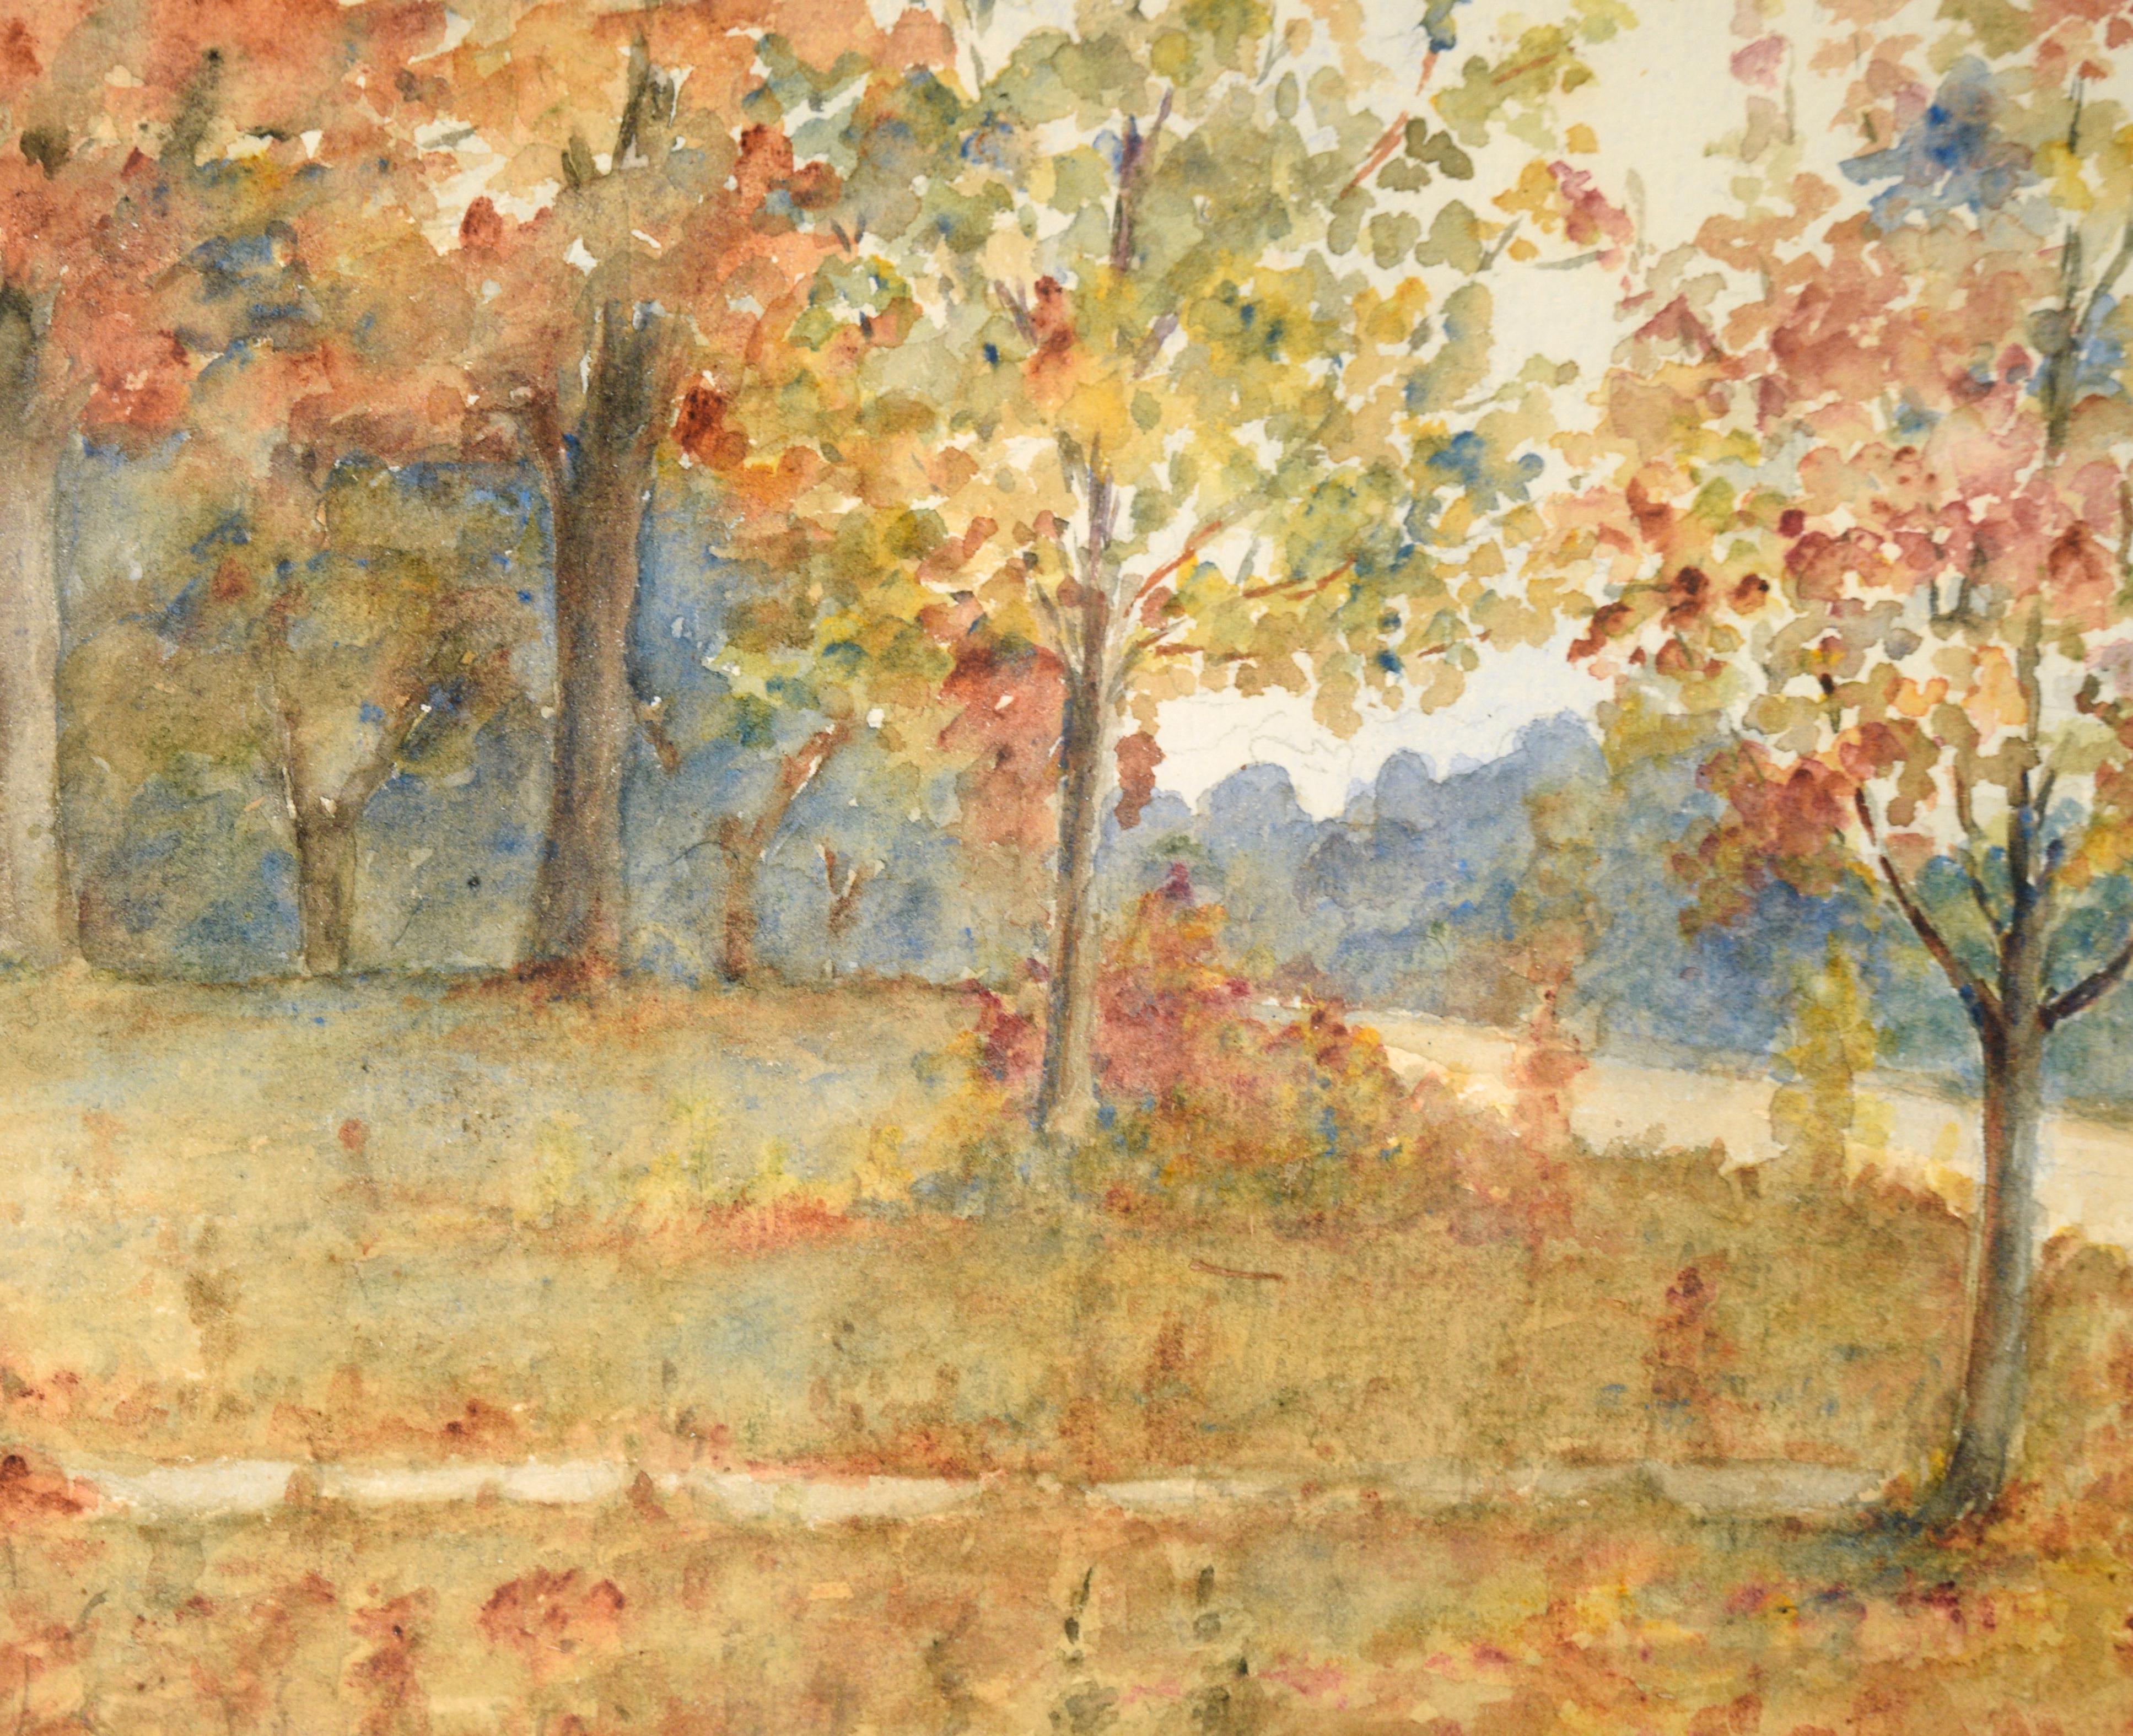 Paysage serein de J. B. Schock. Plusieurs arbres bordent les rives d'une rivière, éclatant de couleurs d'automne. De l'autre côté de la rivière, sur la rive opposée, on peut voir le toit et les cheminées d'une maison au-delà des arbres. Peintre